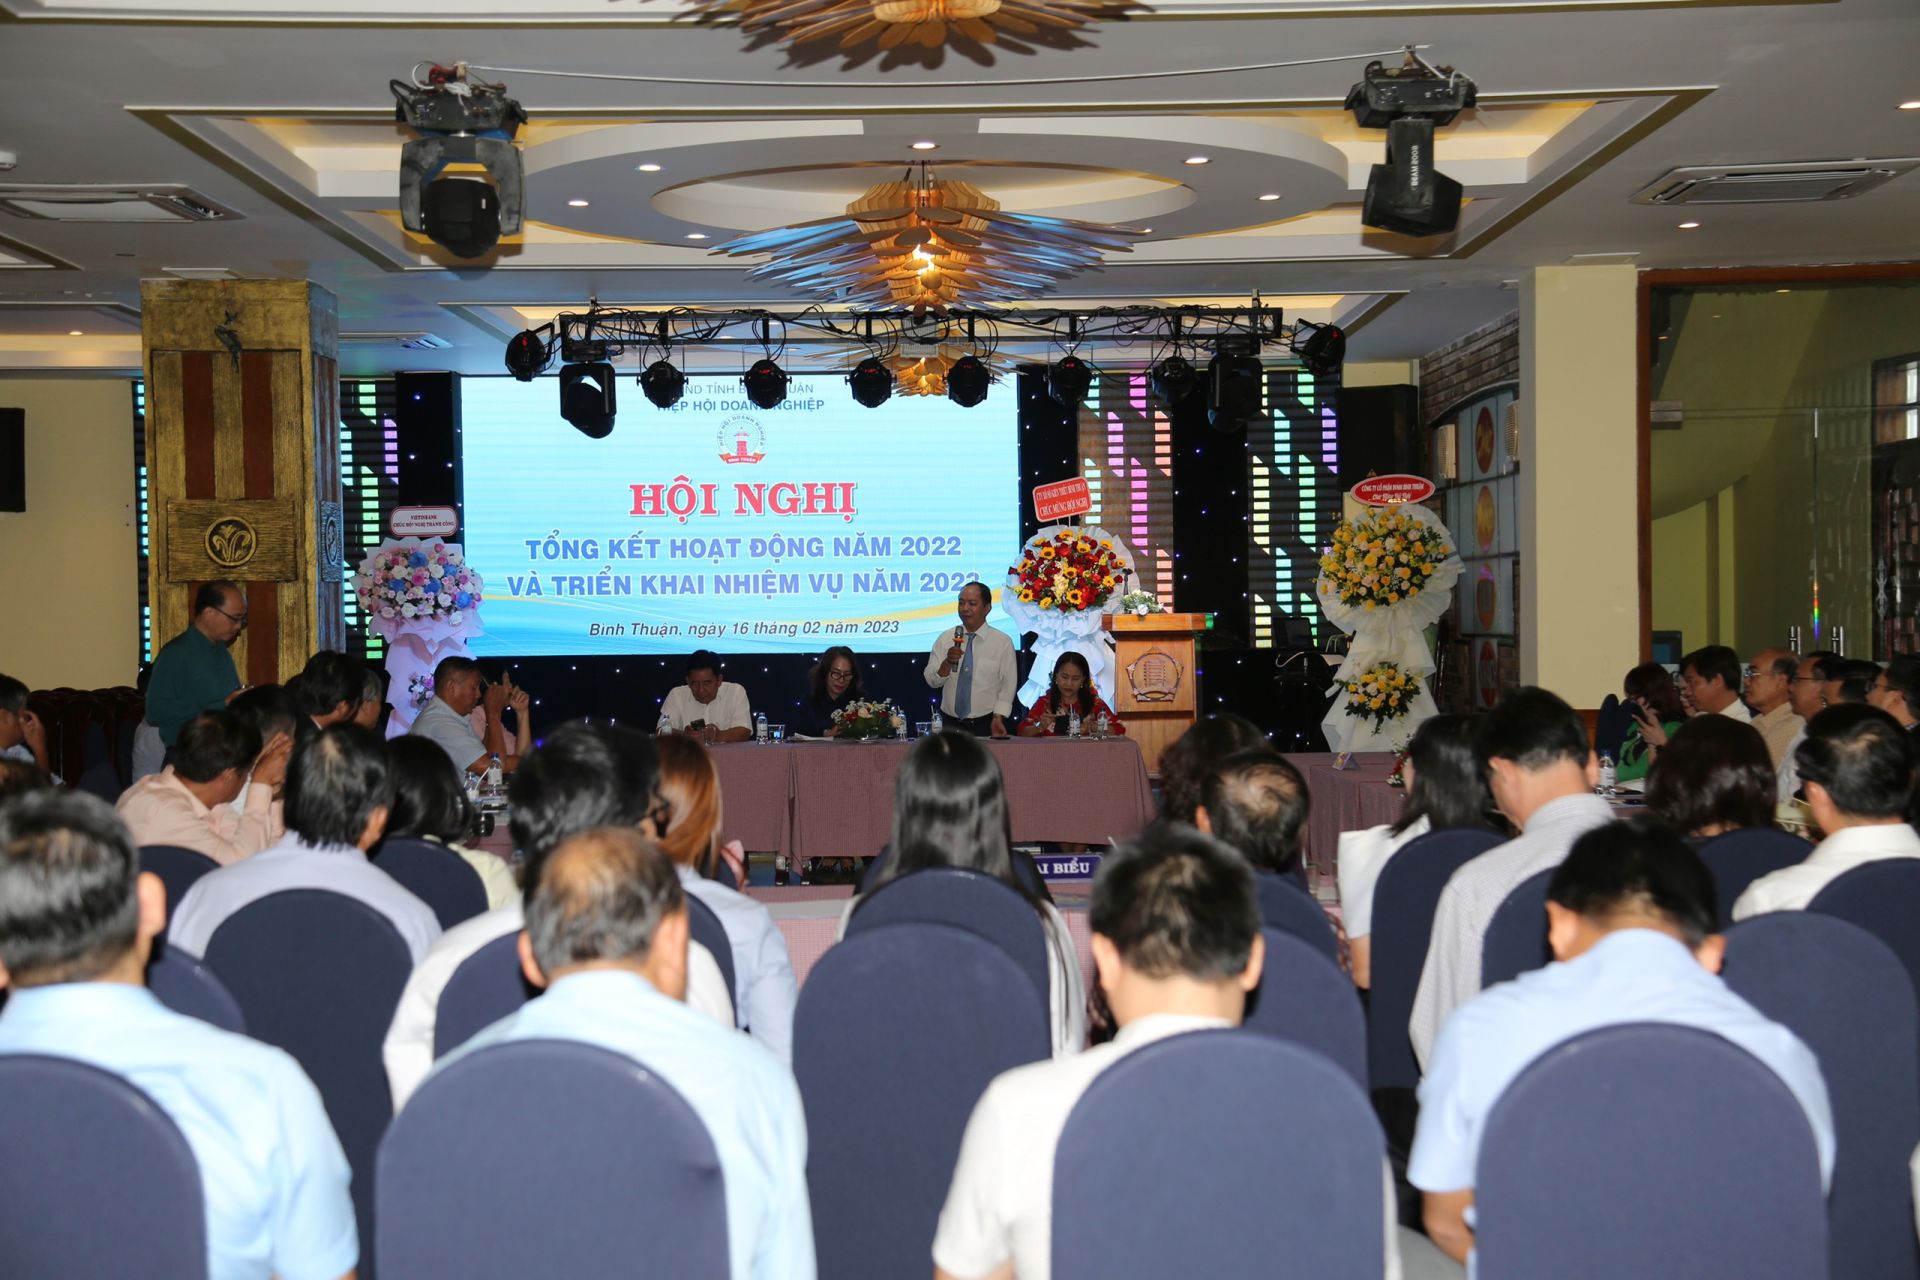 Toàn cảnh Hội nghị của Hiệp hội Doanh nghiệp tỉnh Bình Thuận.